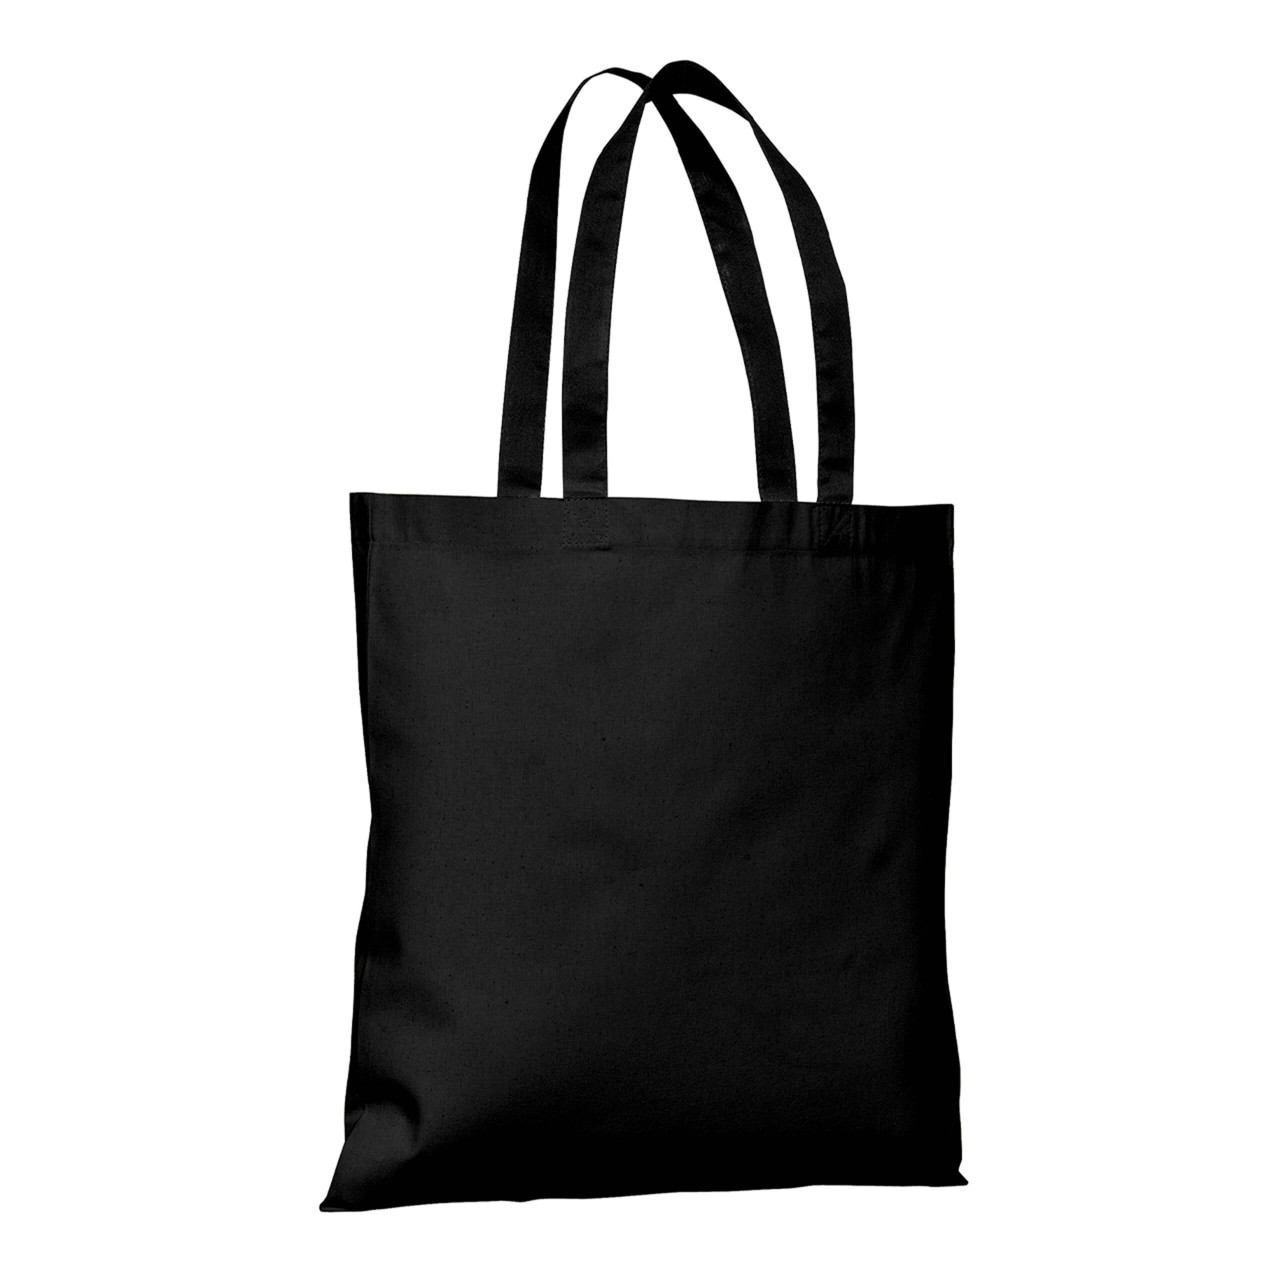 Black Tote Bag Blank - 15in x 15in